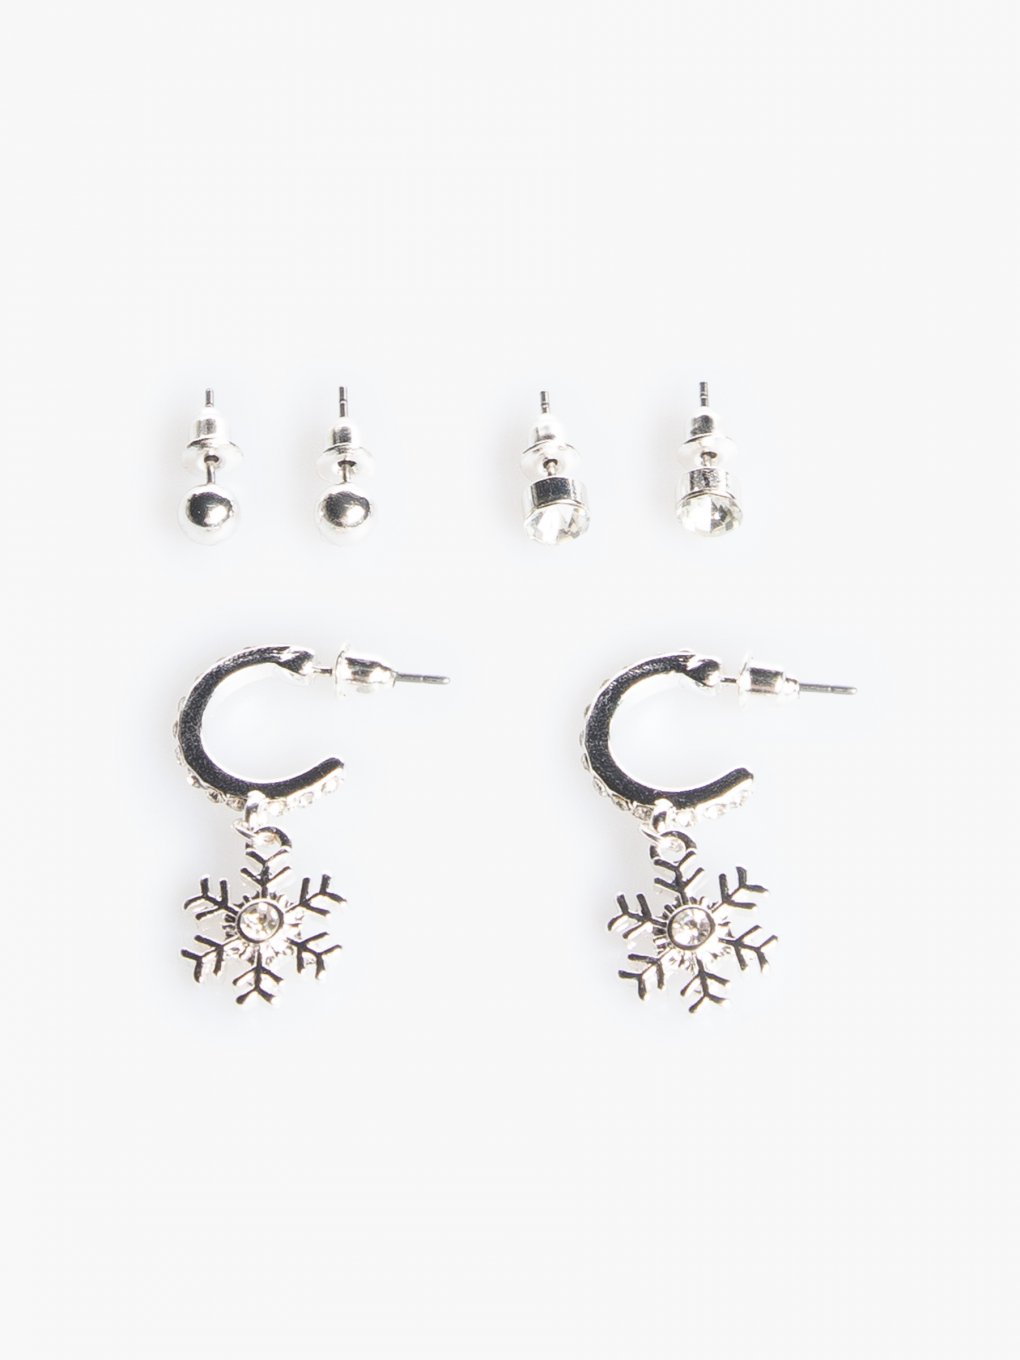 3 pairs of Christmas earrings